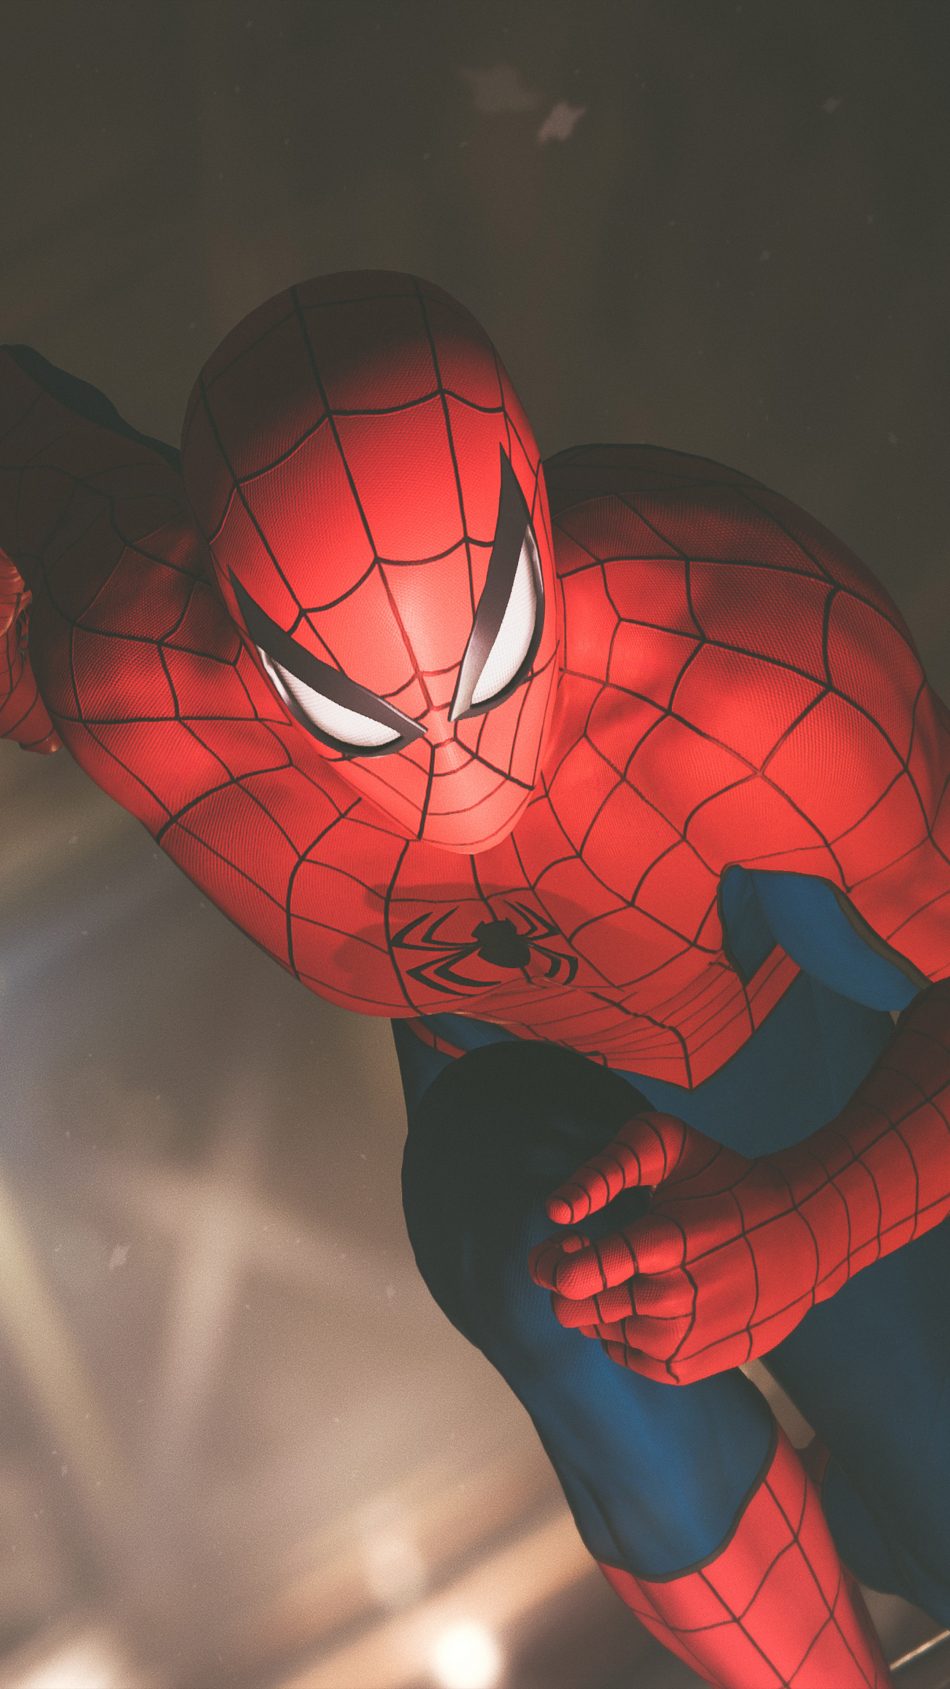 fond d'écran hd spider man pour mobile,homme araignée,super héros,personnage fictif,fiction